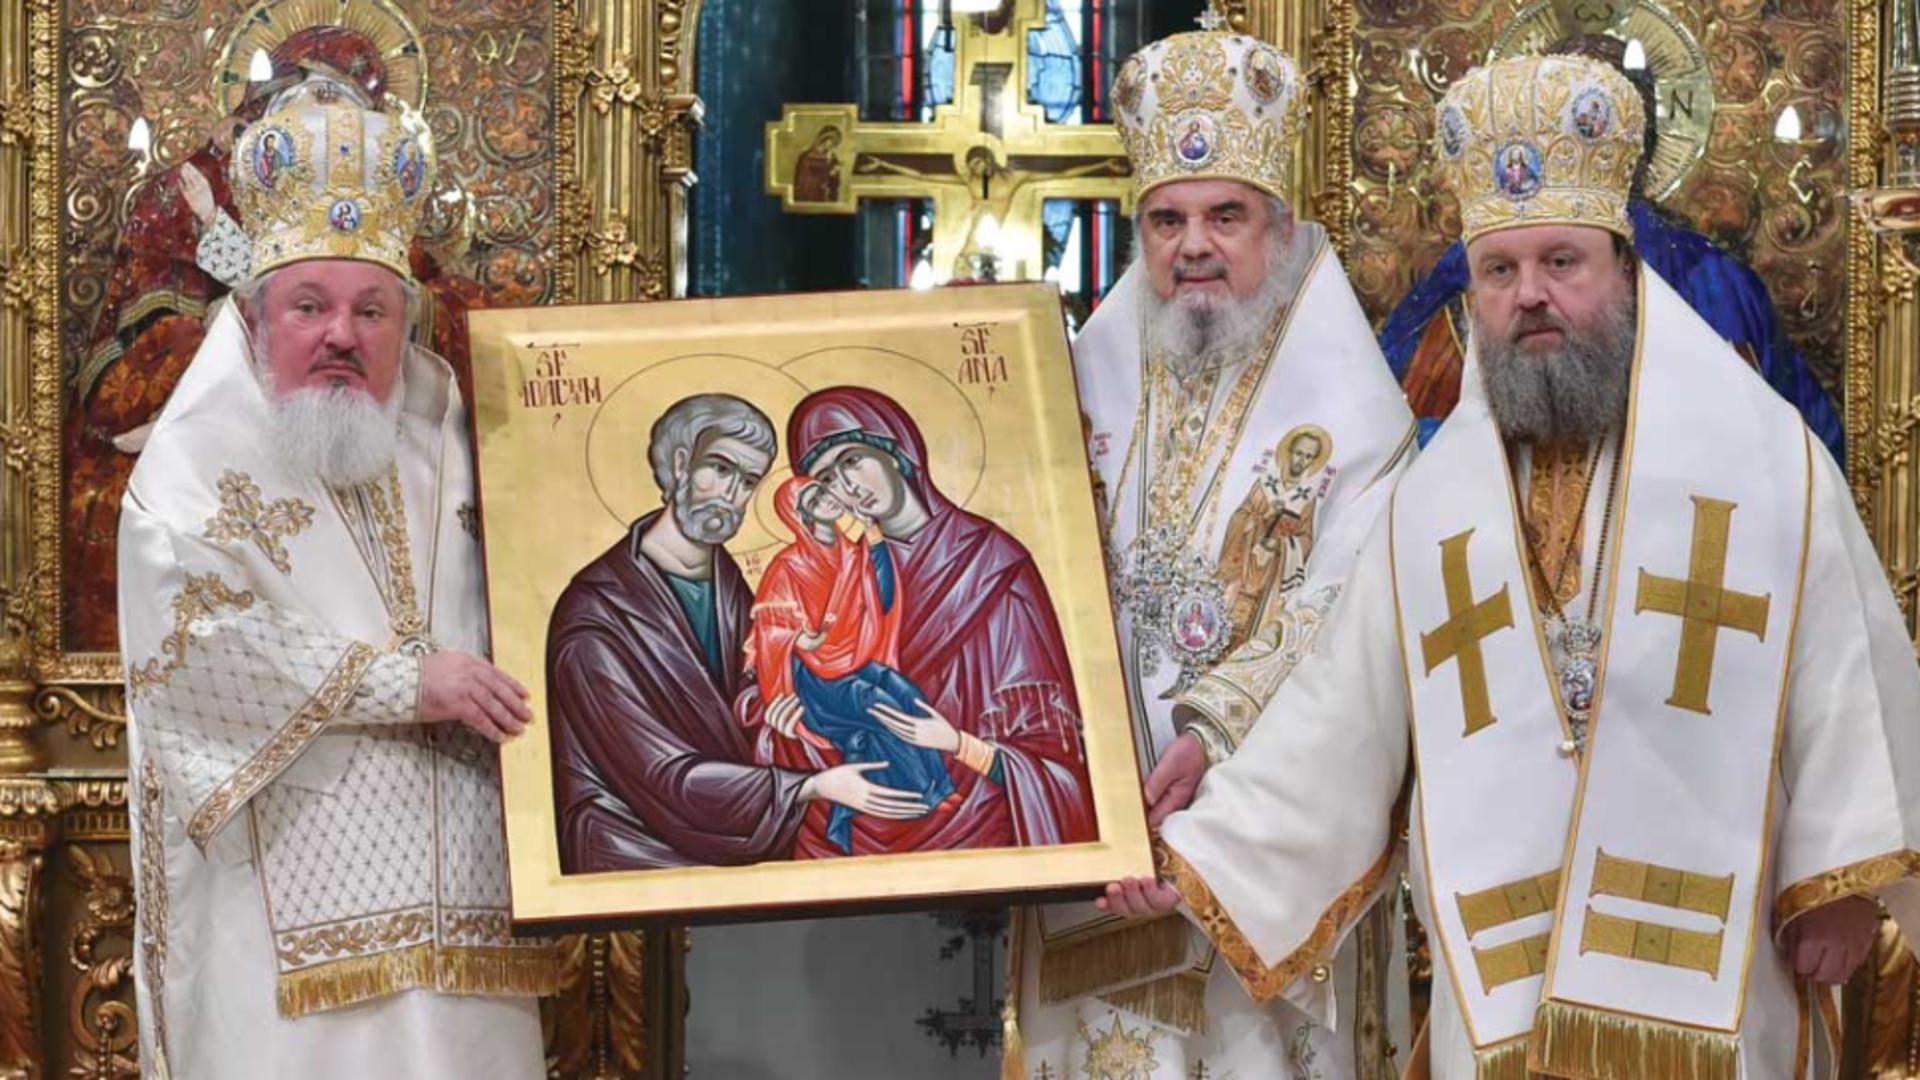 Sărbătoare 9 septembrie. Mari sfinți sunt pomeniți în calendarul ortodox